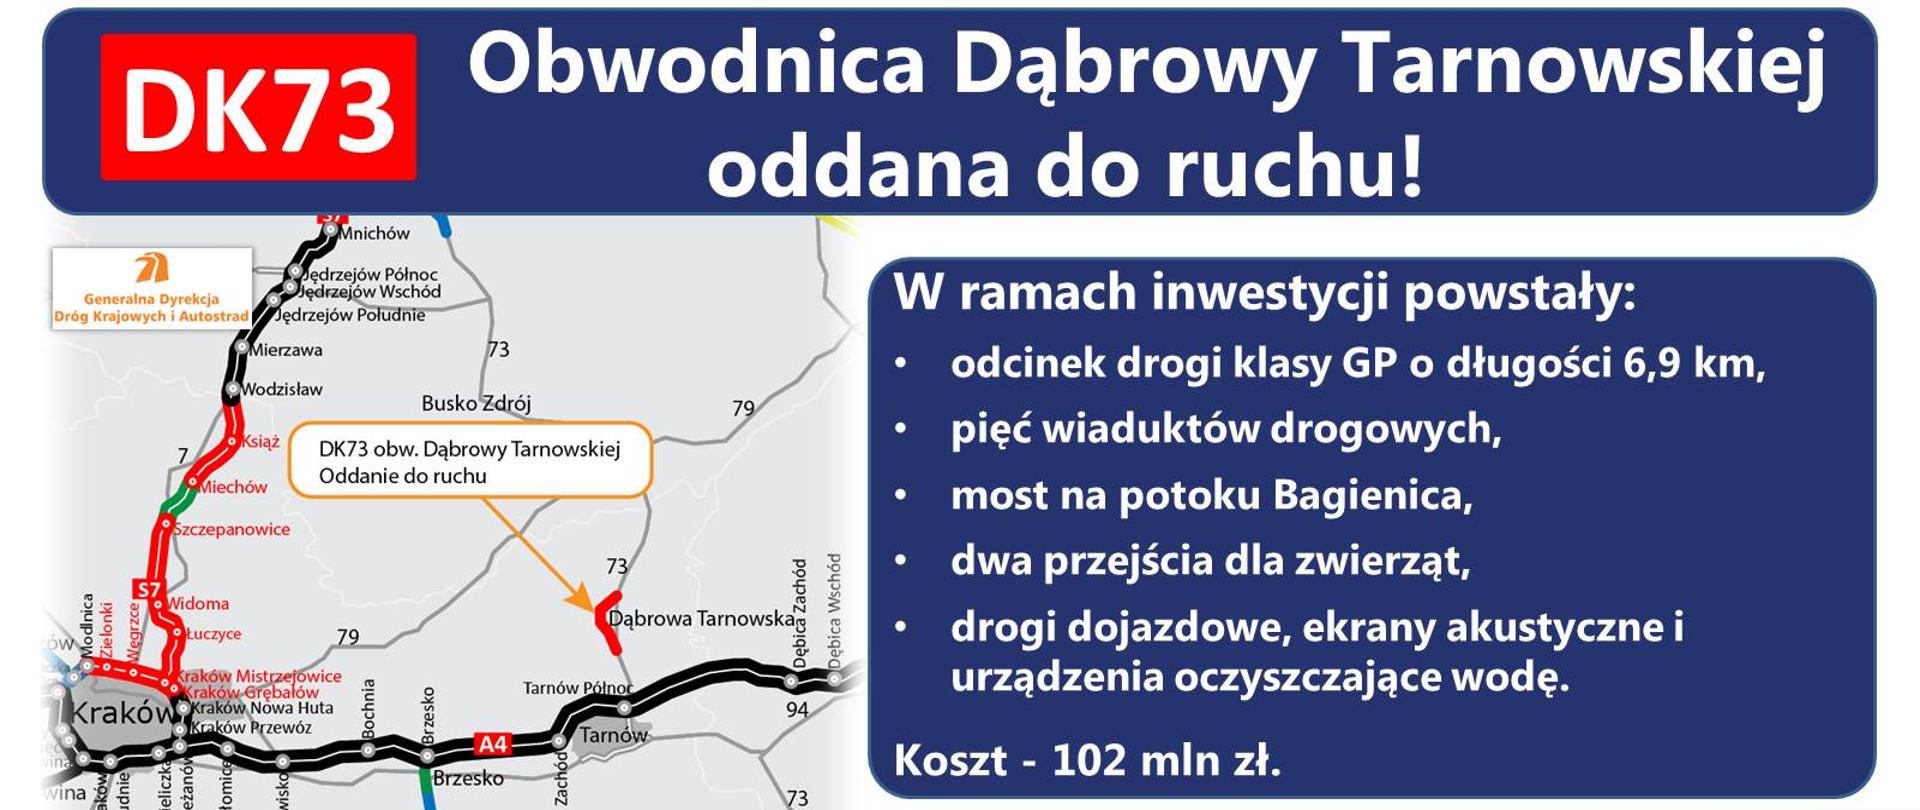 Obwodnica Dąbrowy Tarnowskiej oddana do ruchu - infografika